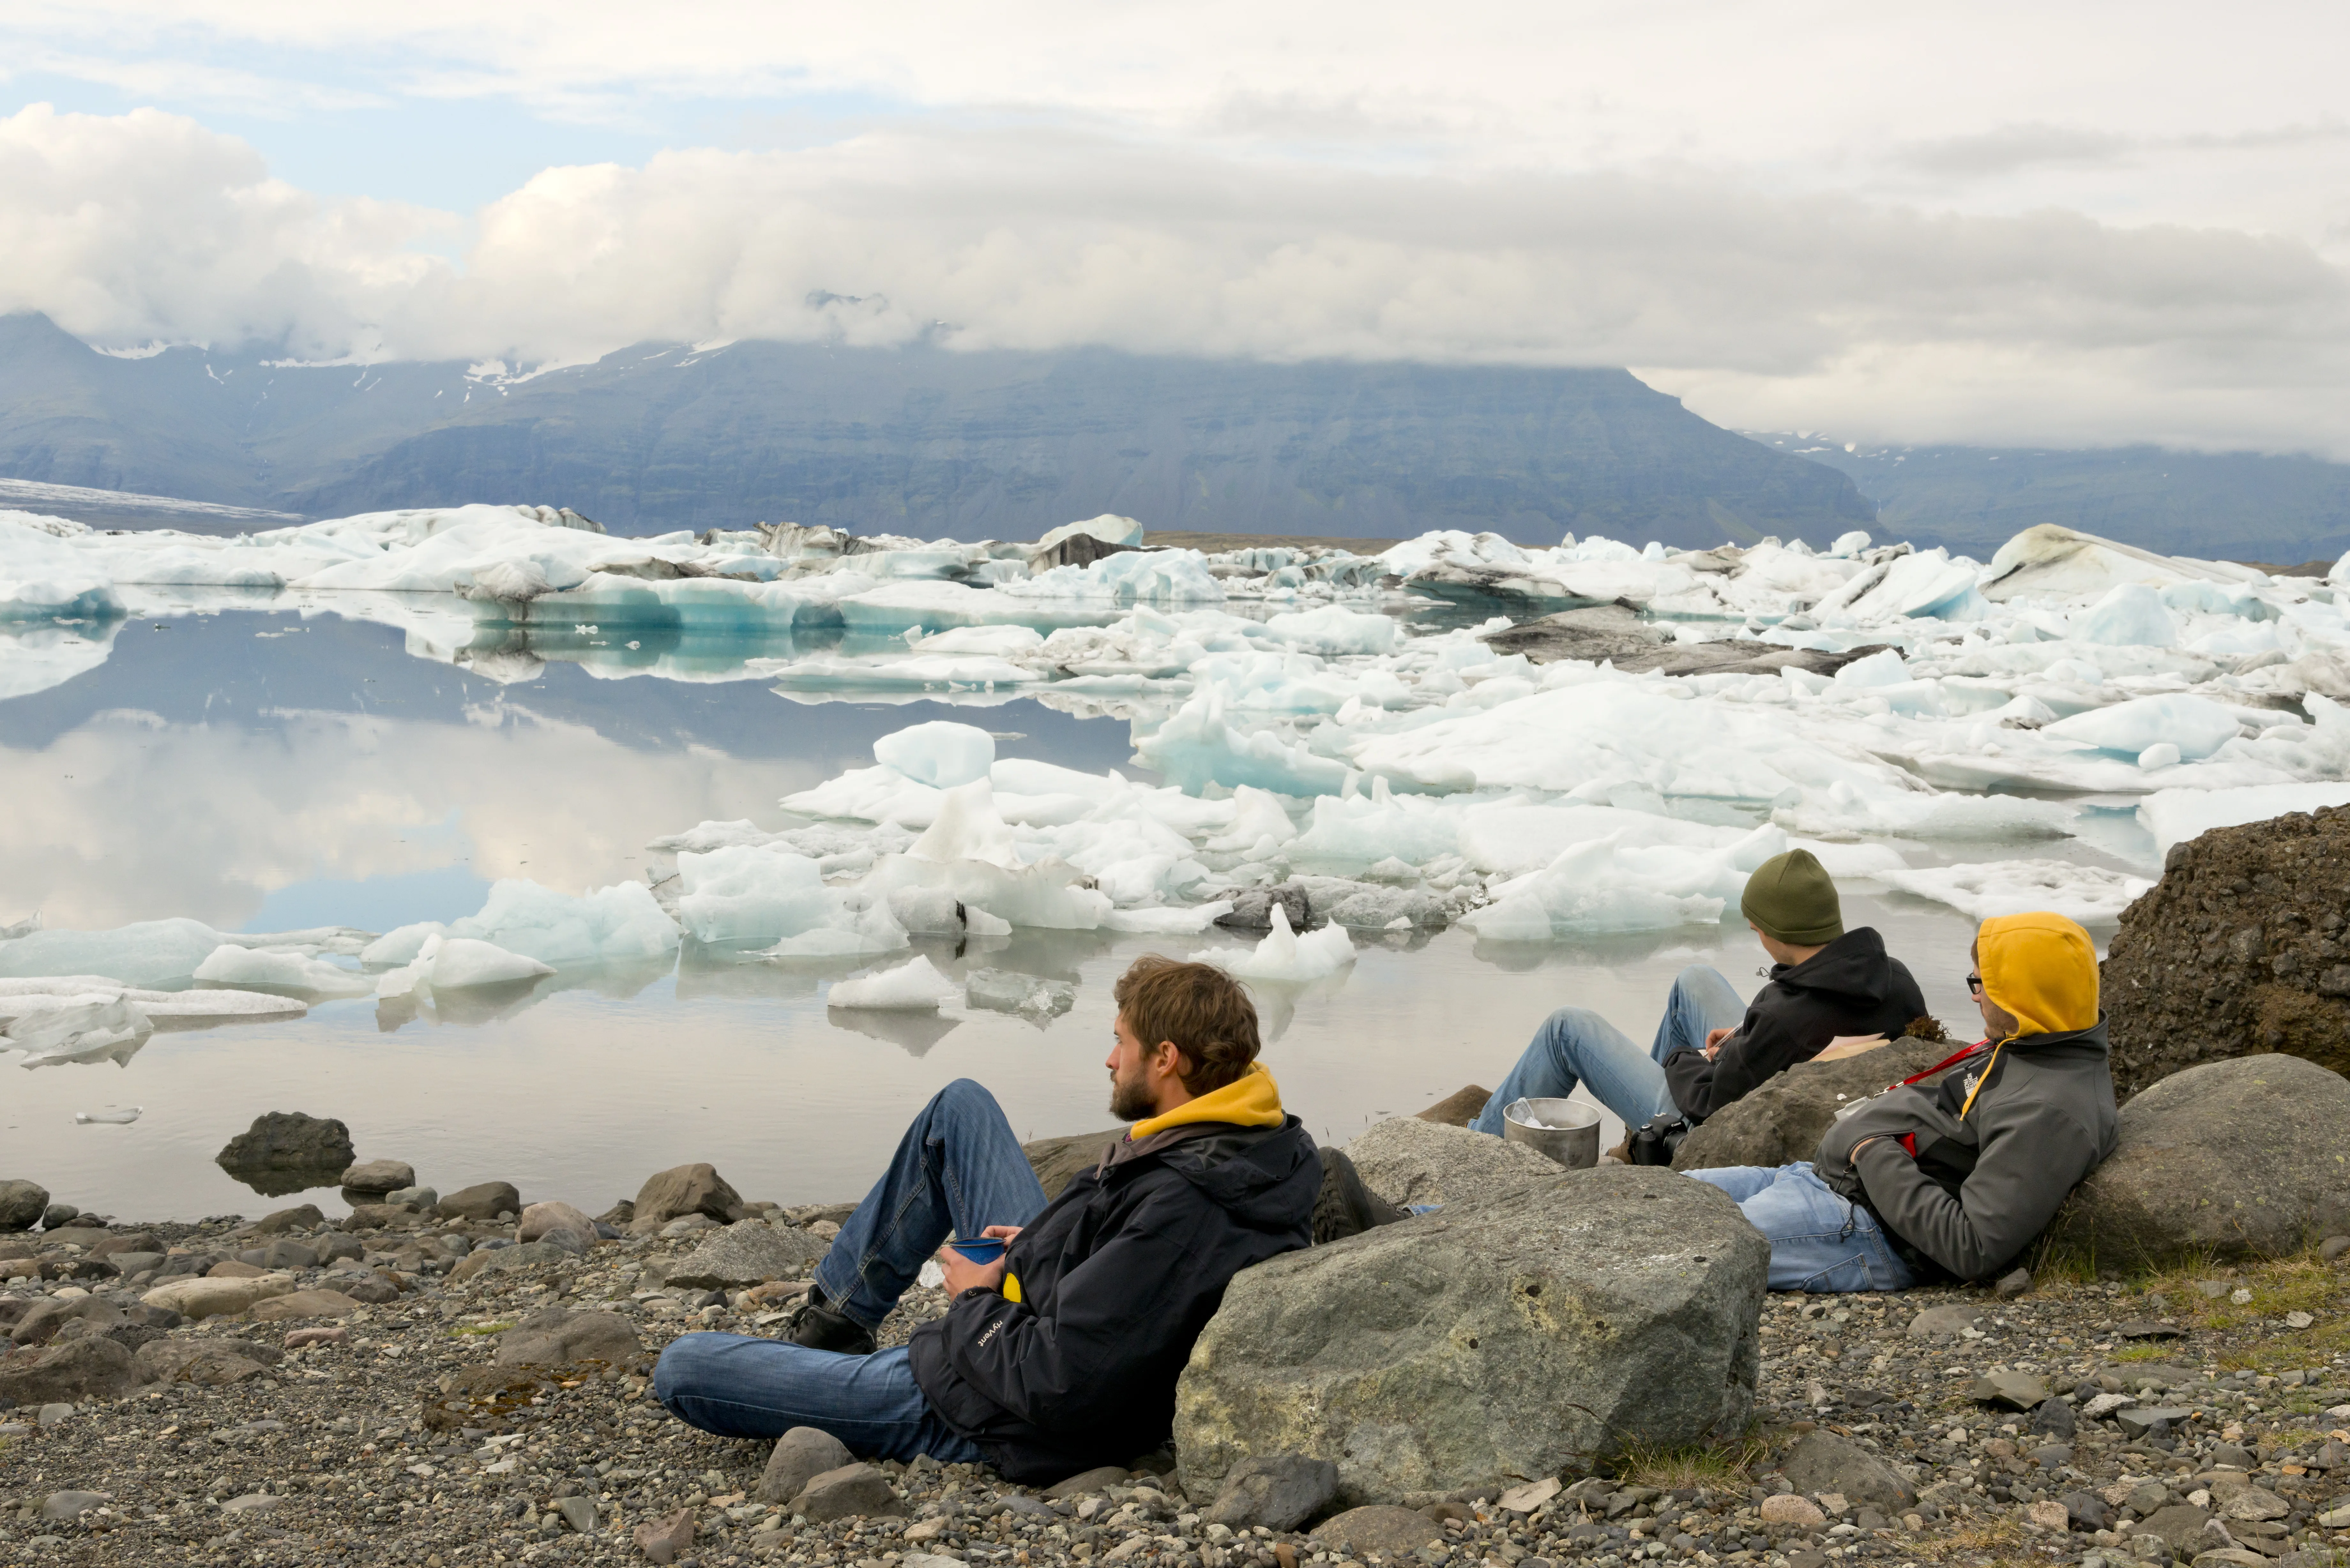 Südisland Gletscherlagune Jökulsarlon, Foto: Thomas Linkel
Drei Personen schauen an Felsen lehnend auf die Gletscherlagune Jökulsarlon, in der große Eisberge schwimmen. Im Hintergrund ist ein Berg mit Wolken verdeckt